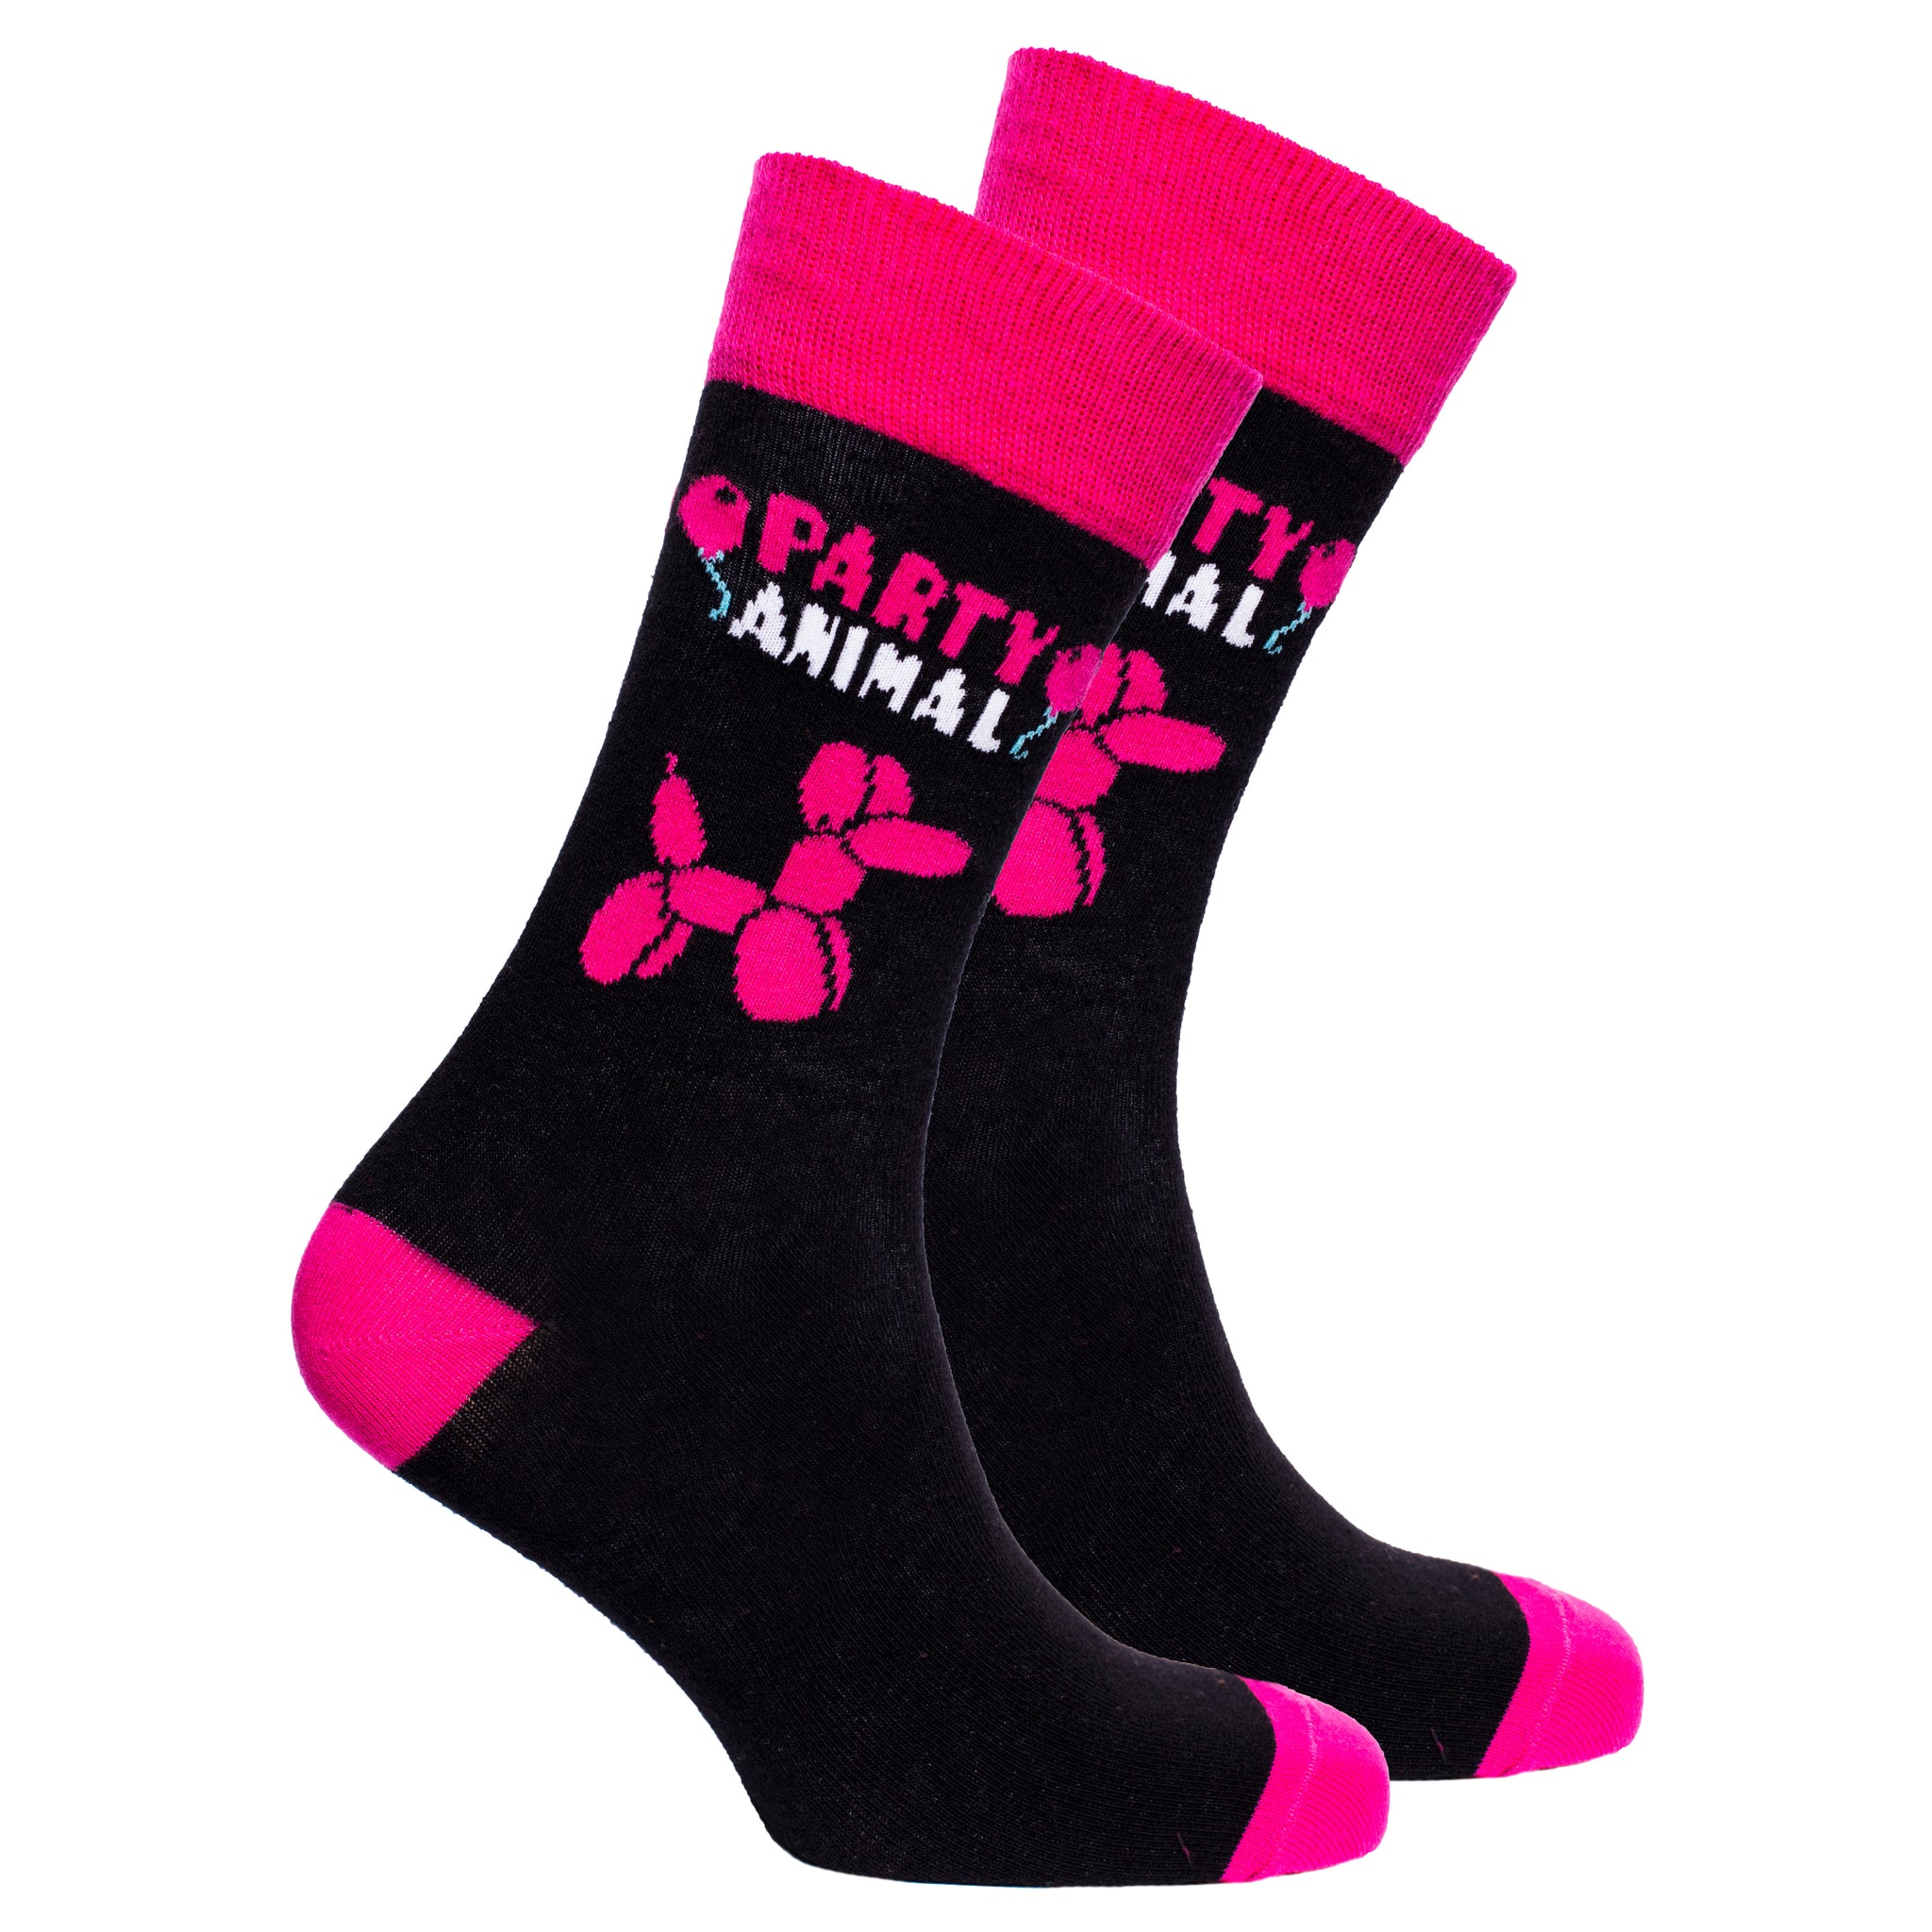 Men's Party Animal Socks